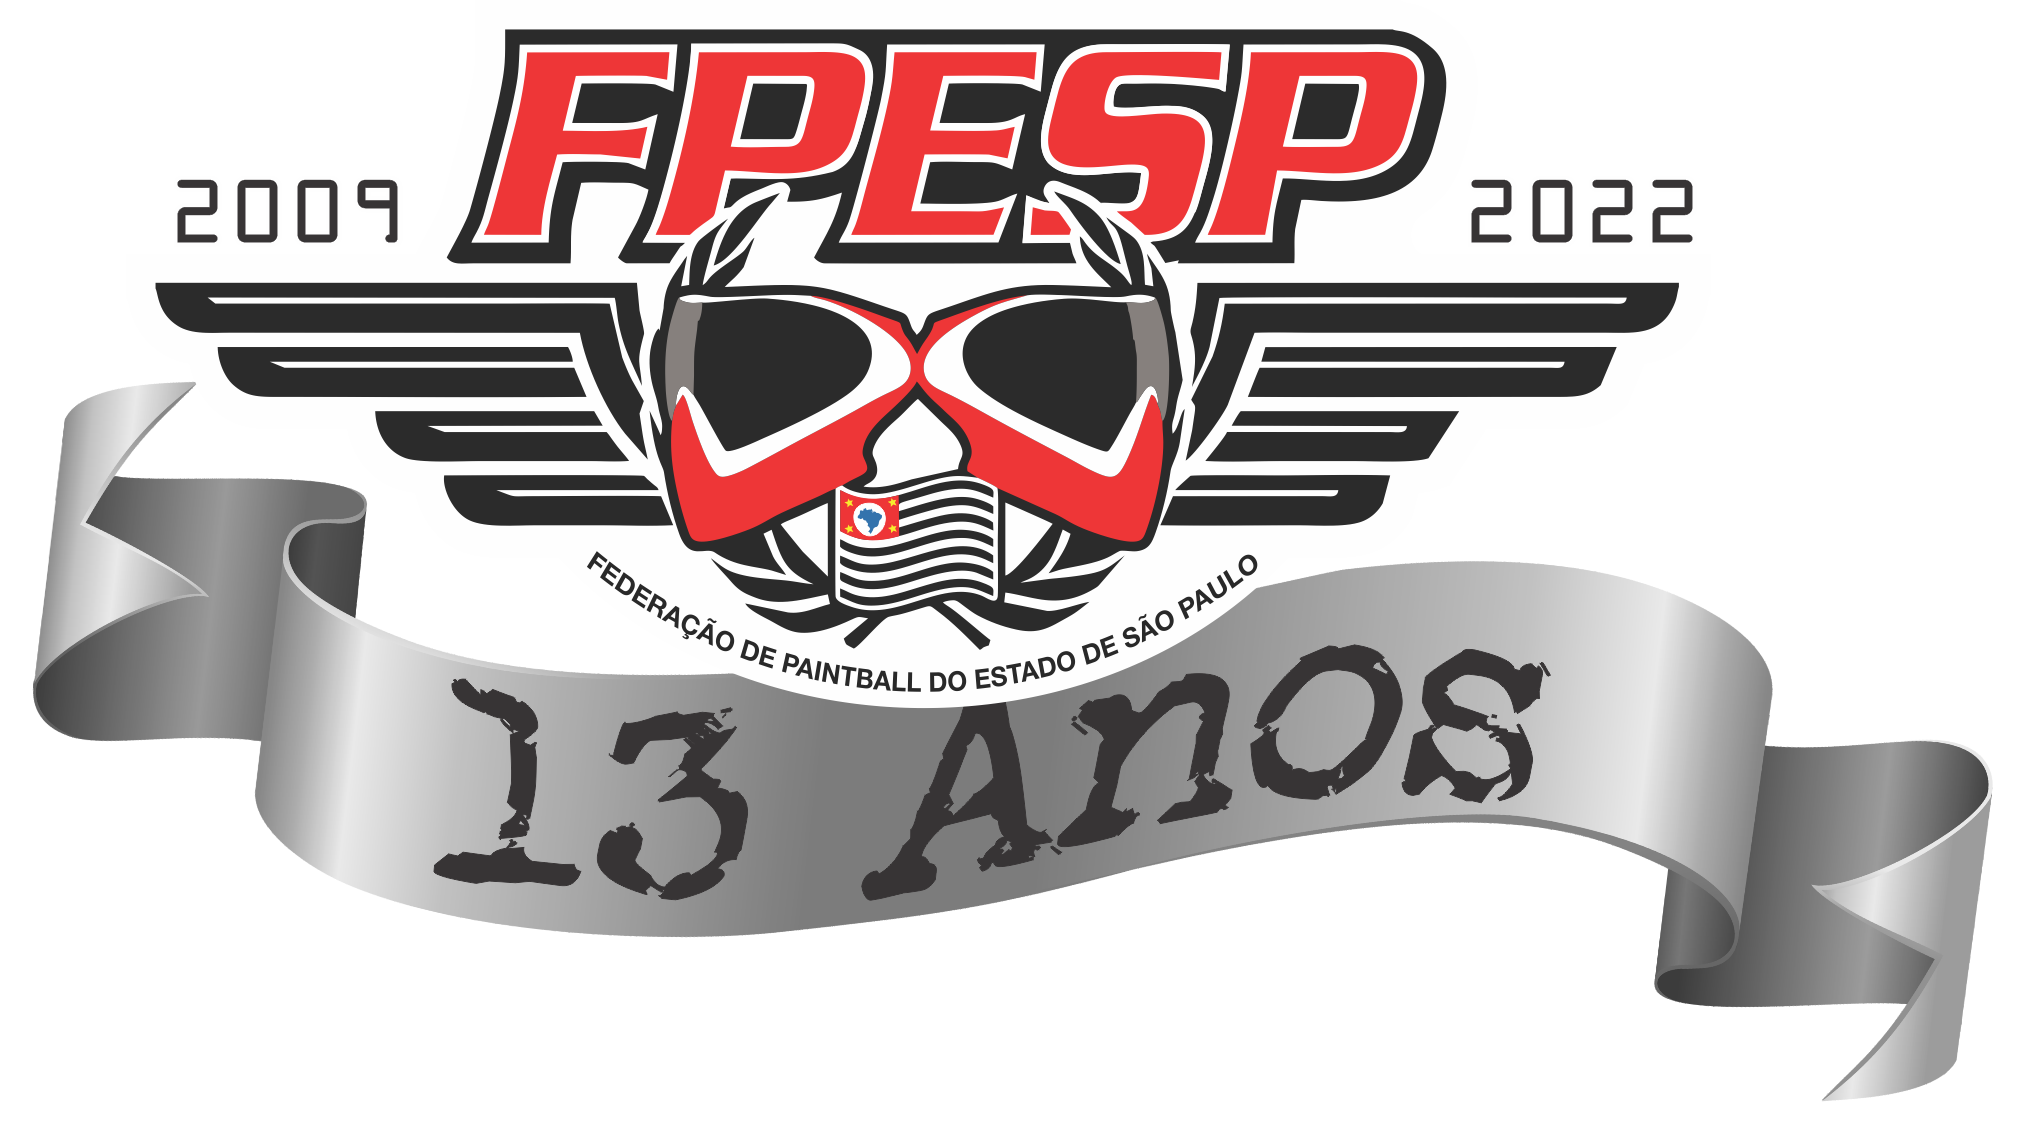 FPESP - Federação de Paintbal do Estado de São Paulo